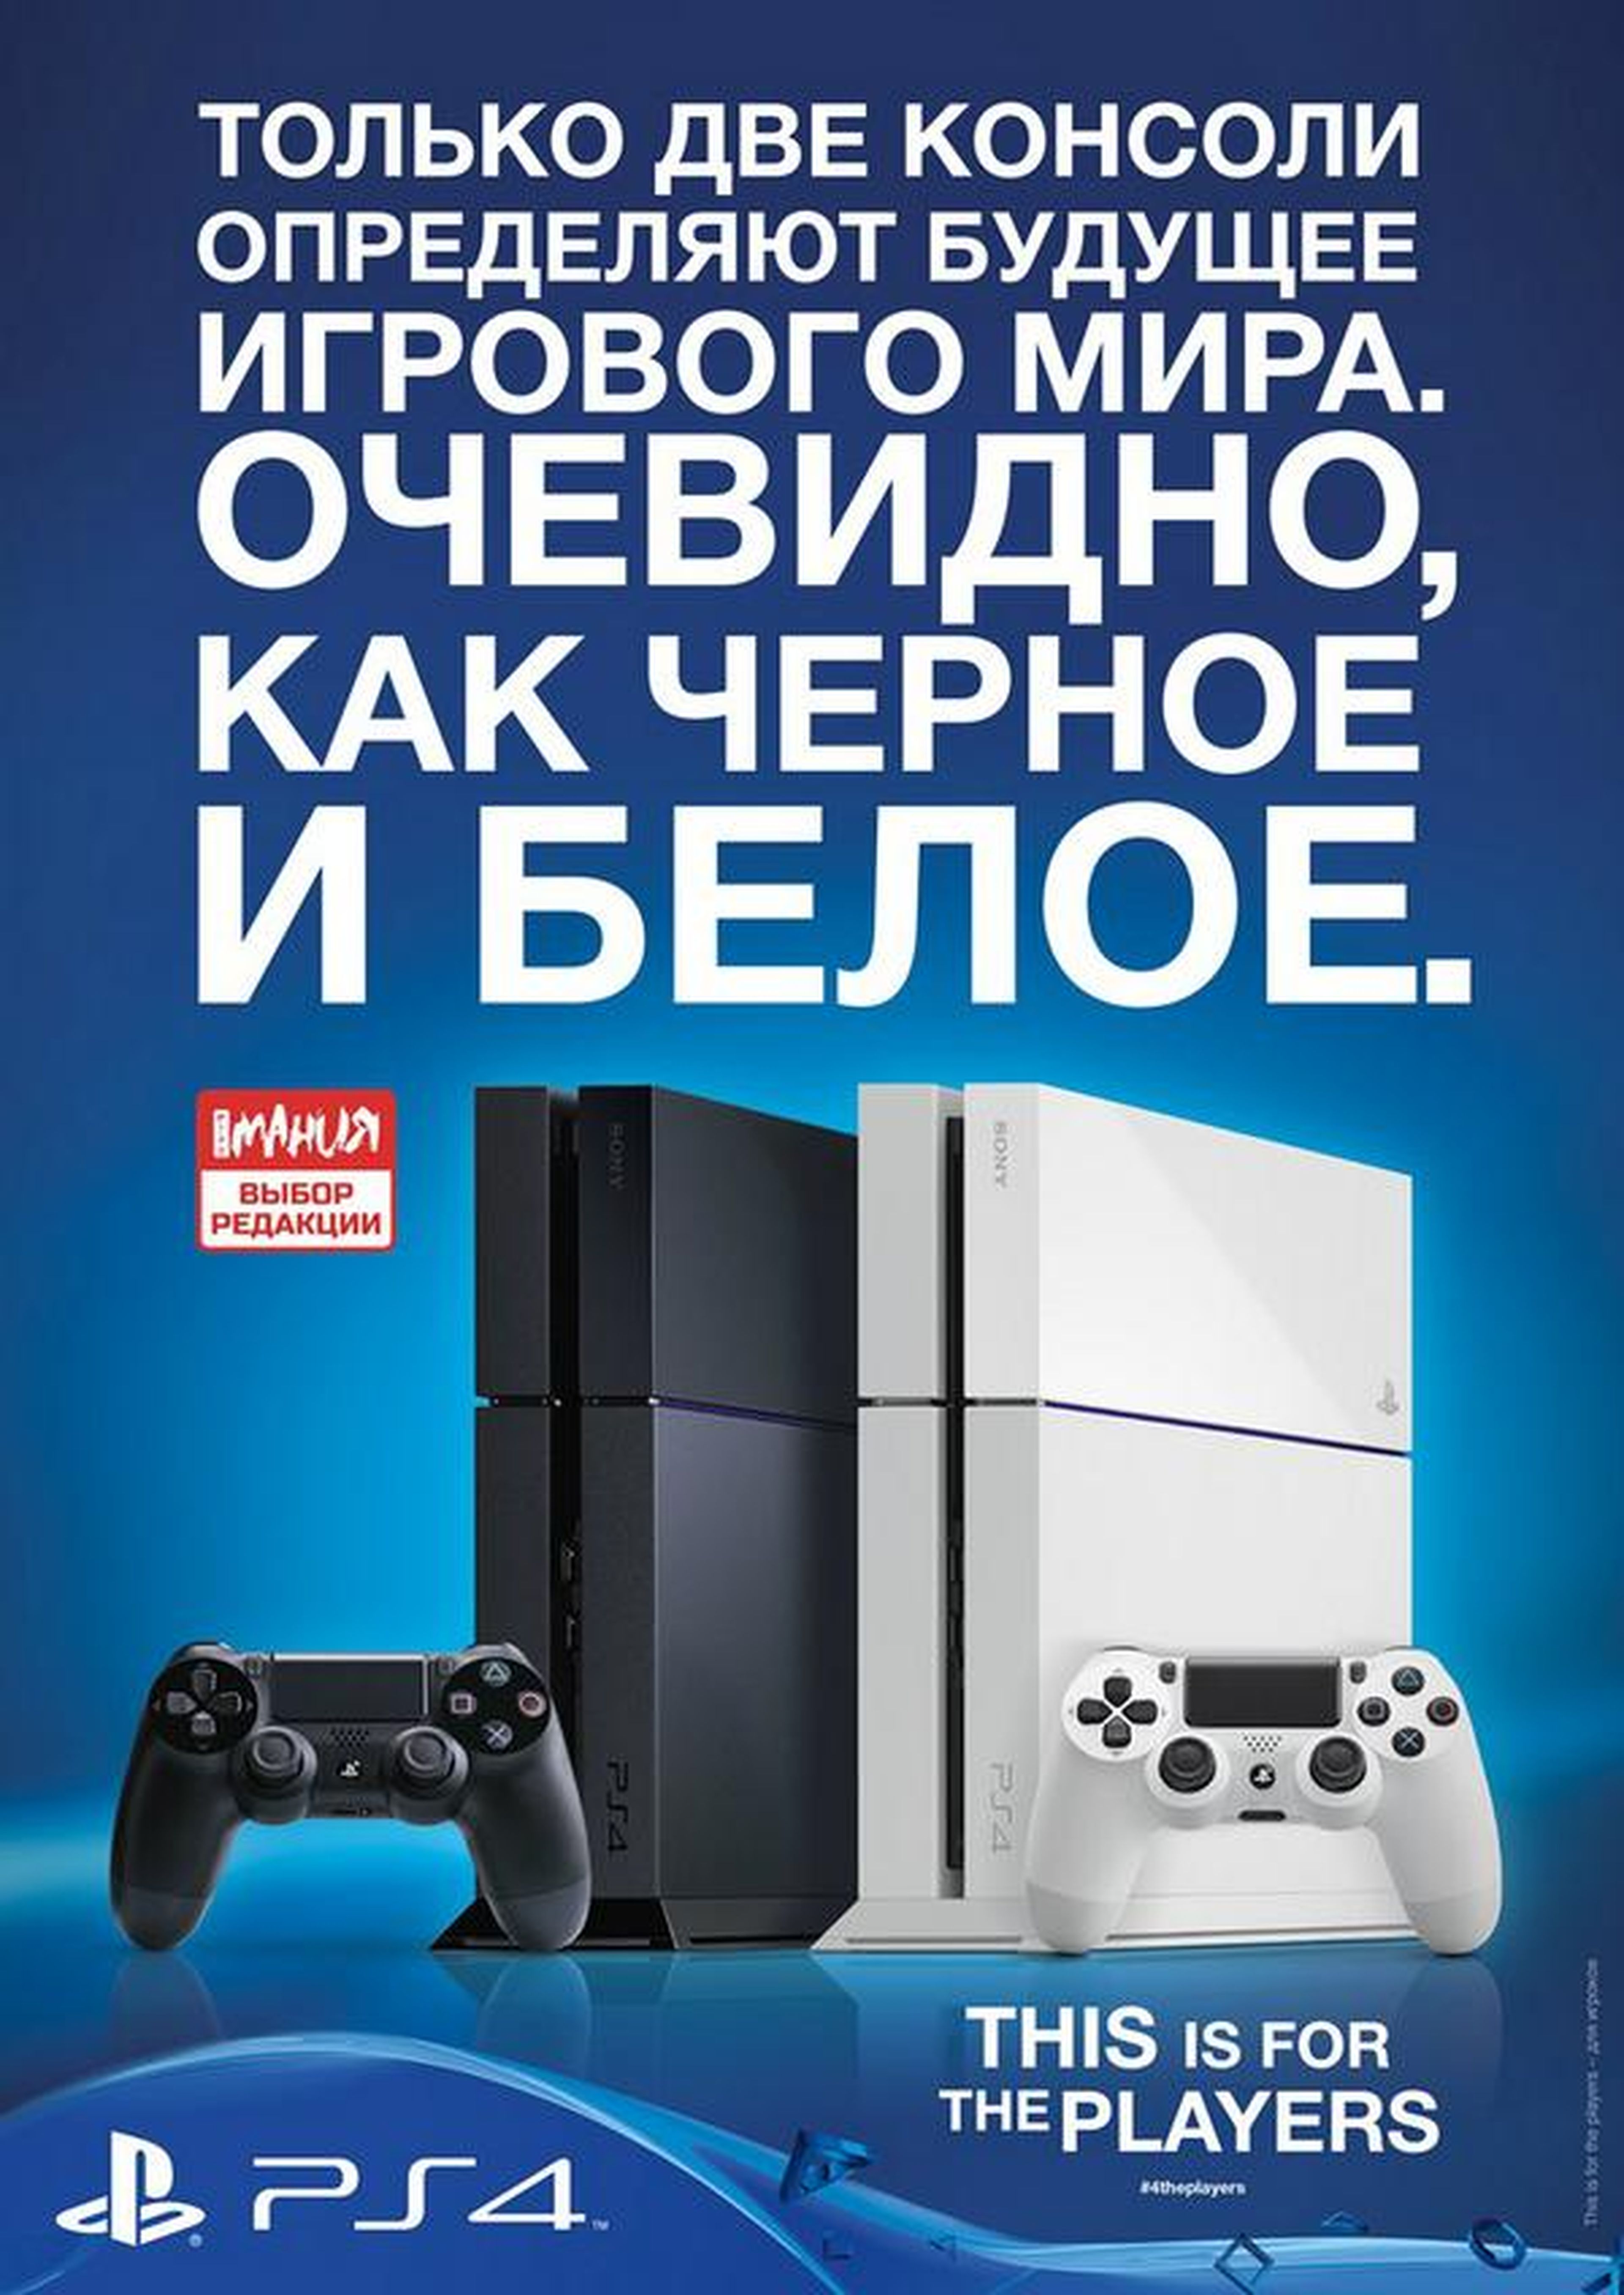 Curiosa forma de recibir a Xbox One en Rusia por parte de Sony